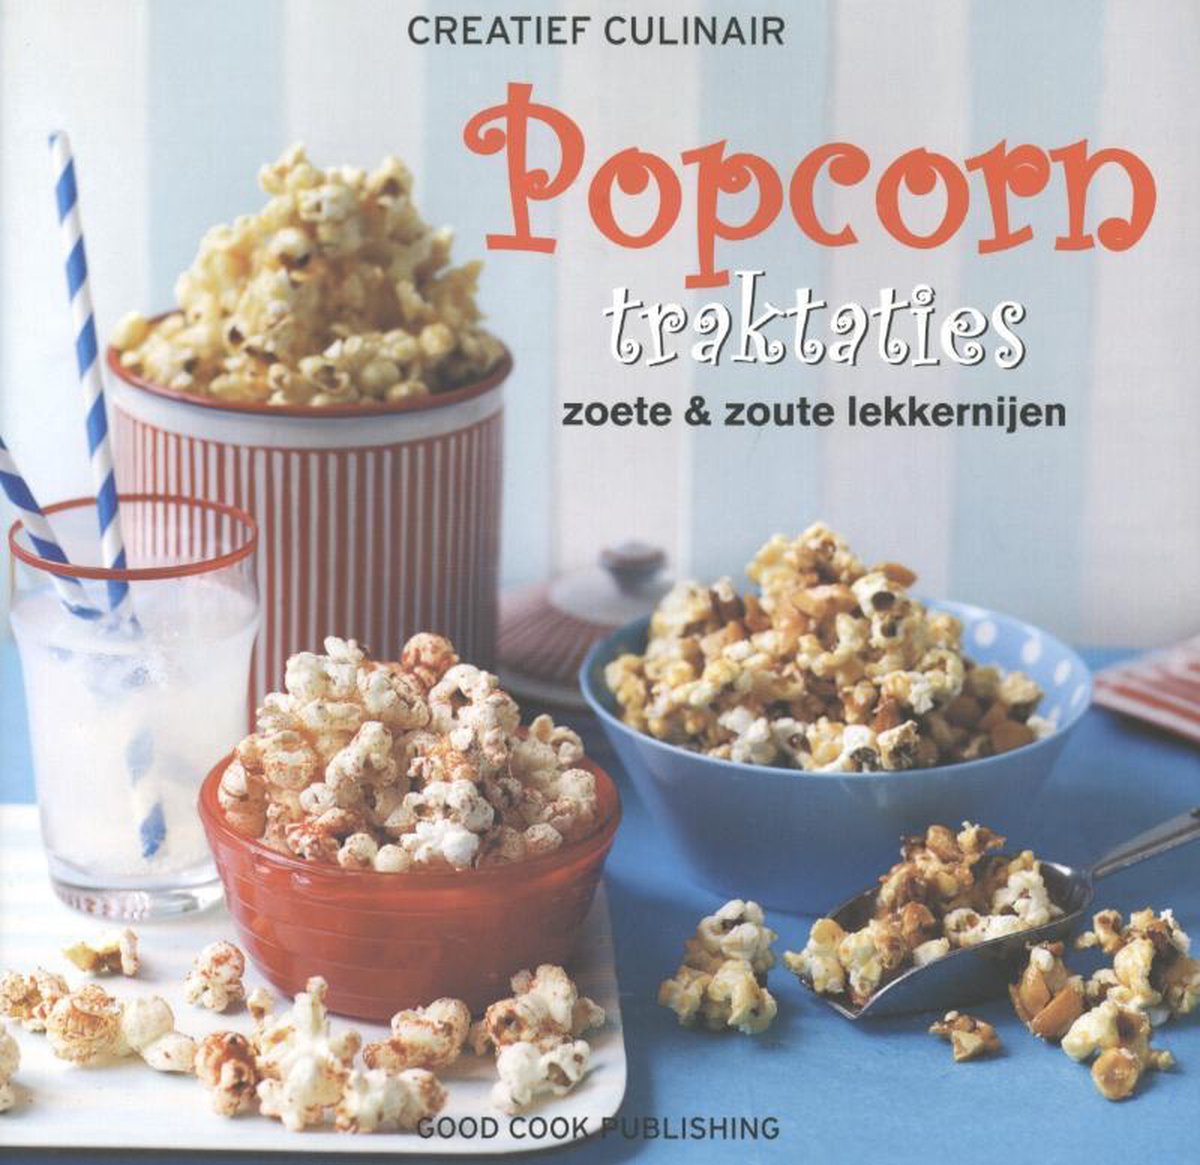 Popcorn traktaties / Creatief Culinair